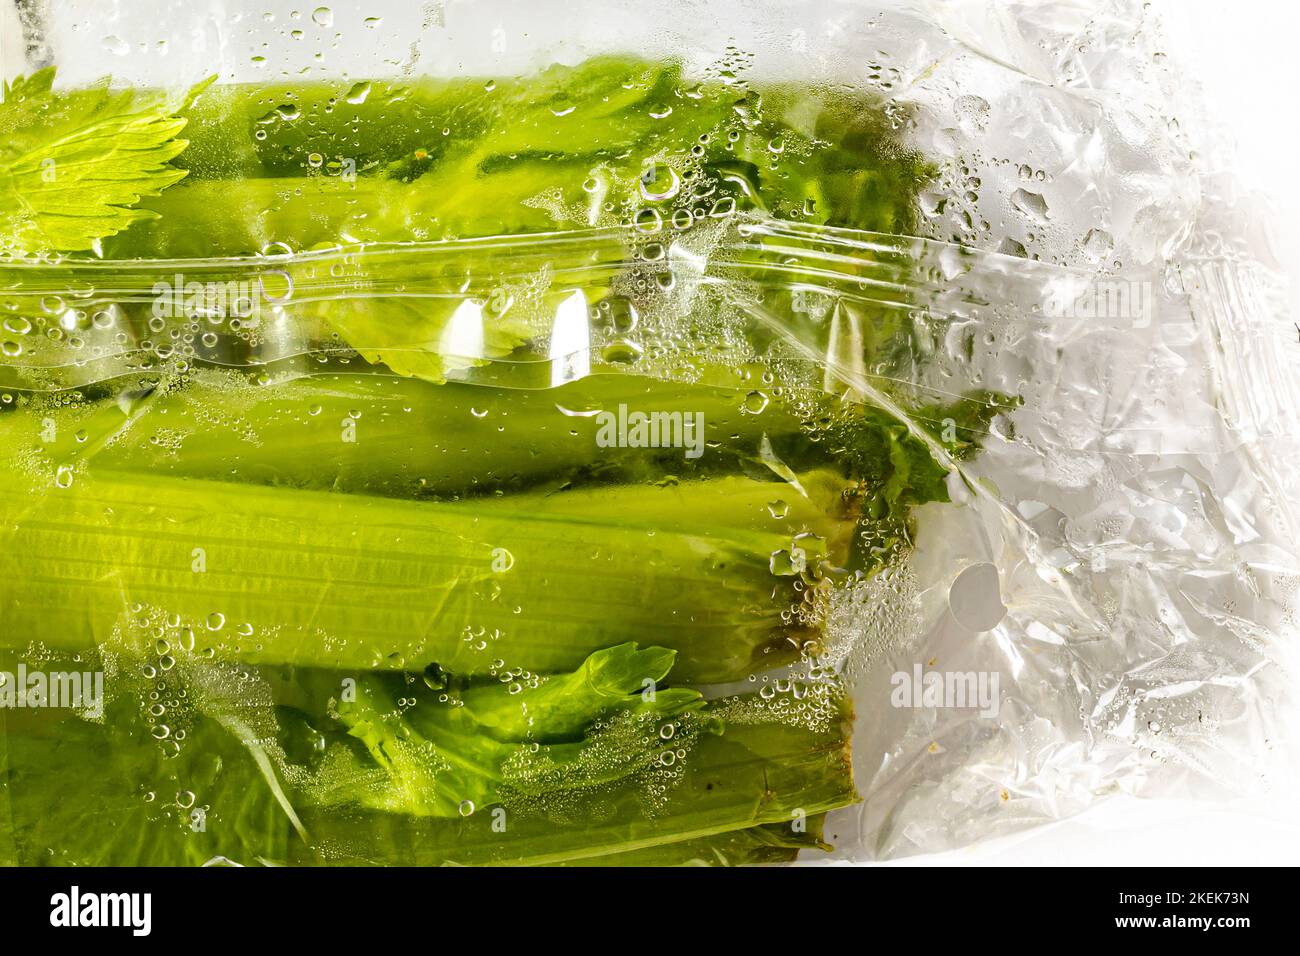 Sellerie in Plastikverpackung, die mit Feuchtigkeit bedeckt ist.ist Plastik der beste Weg, Gemüse frisch zu halten? Stockfoto